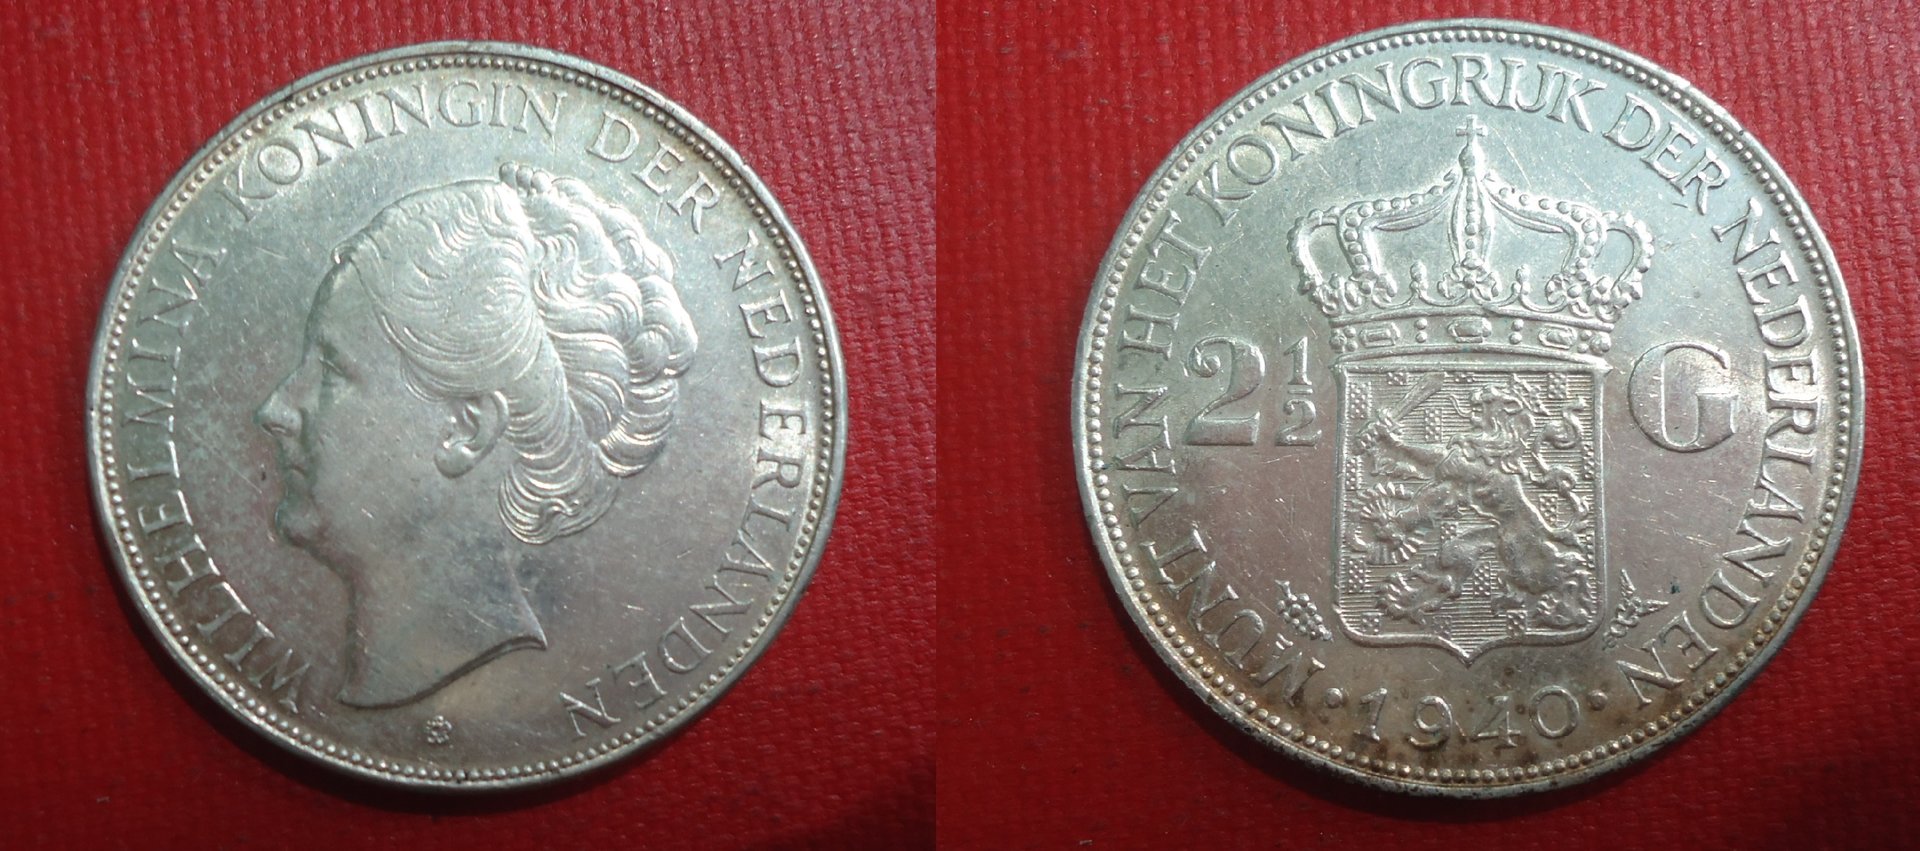 Netherlands - 1940 2.5 Gulden AZ July 30 2019.jpg